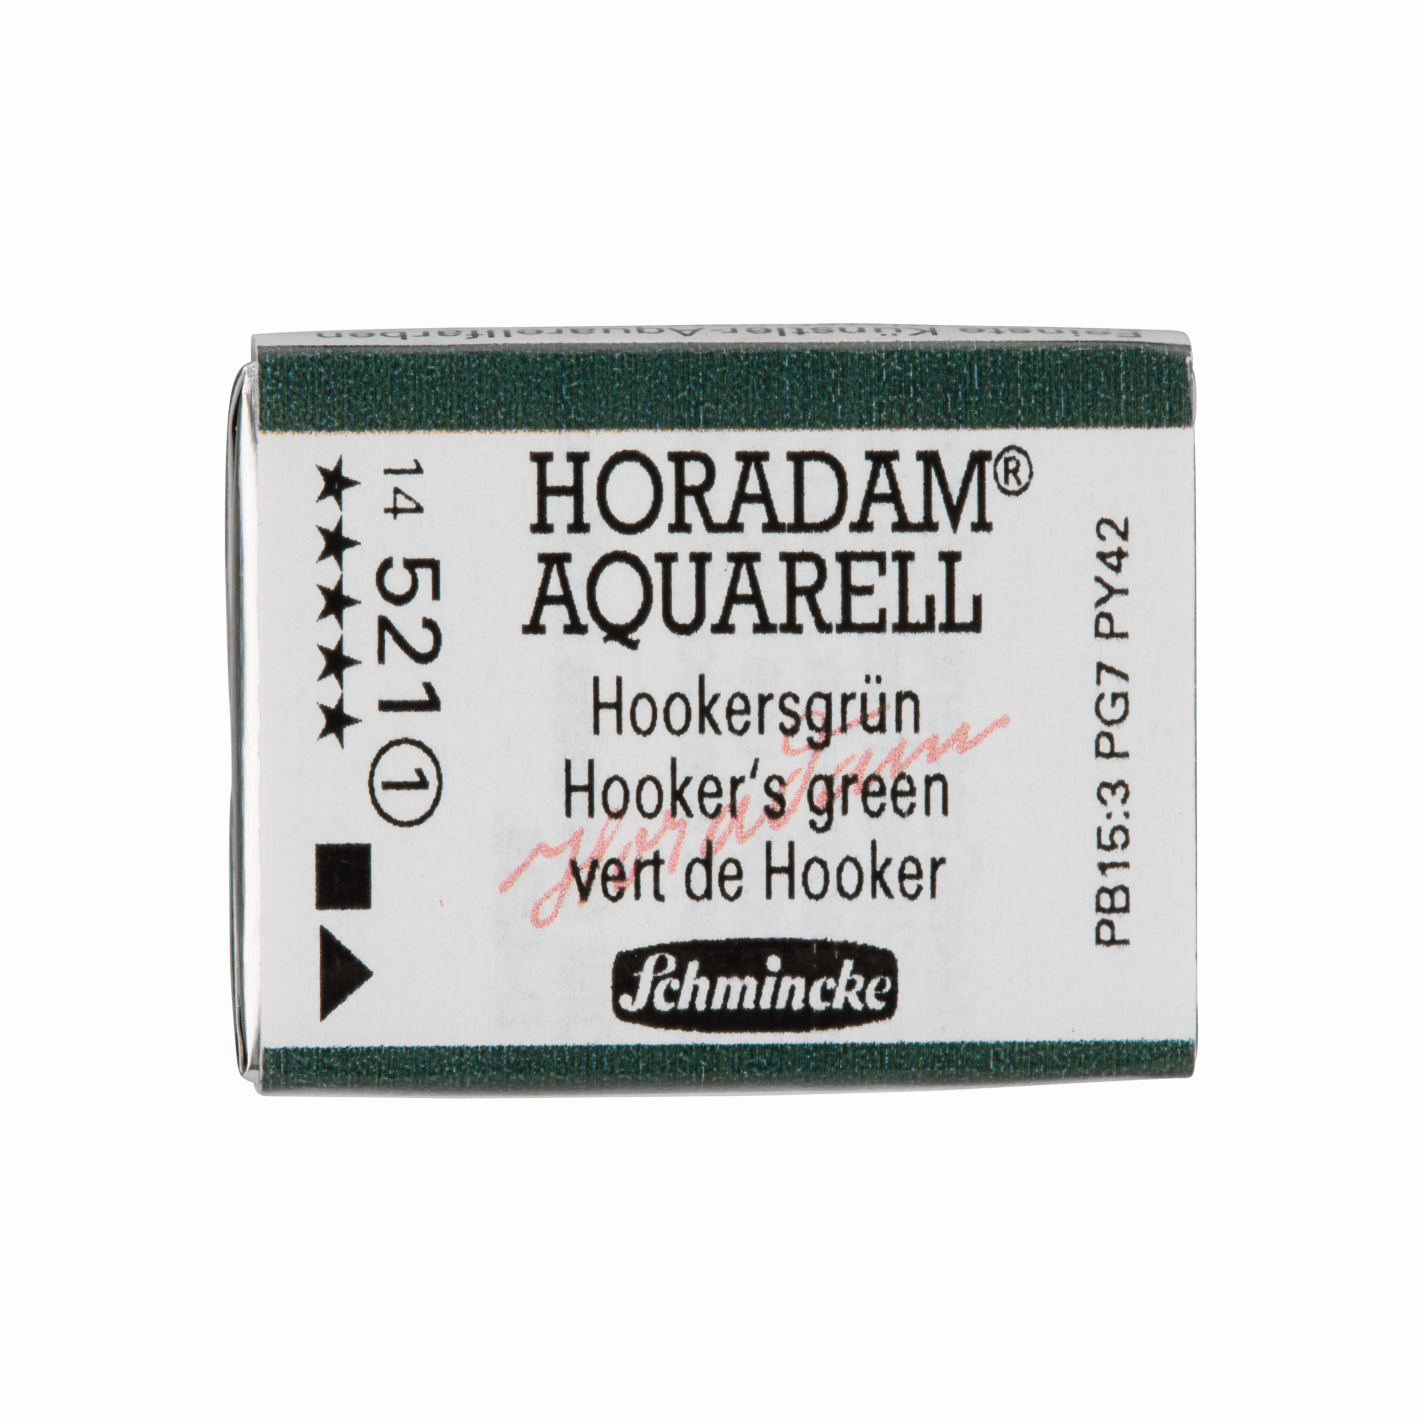 Schmincke Horadam Aquarell pans 1/1 pan Hooker‘s Green